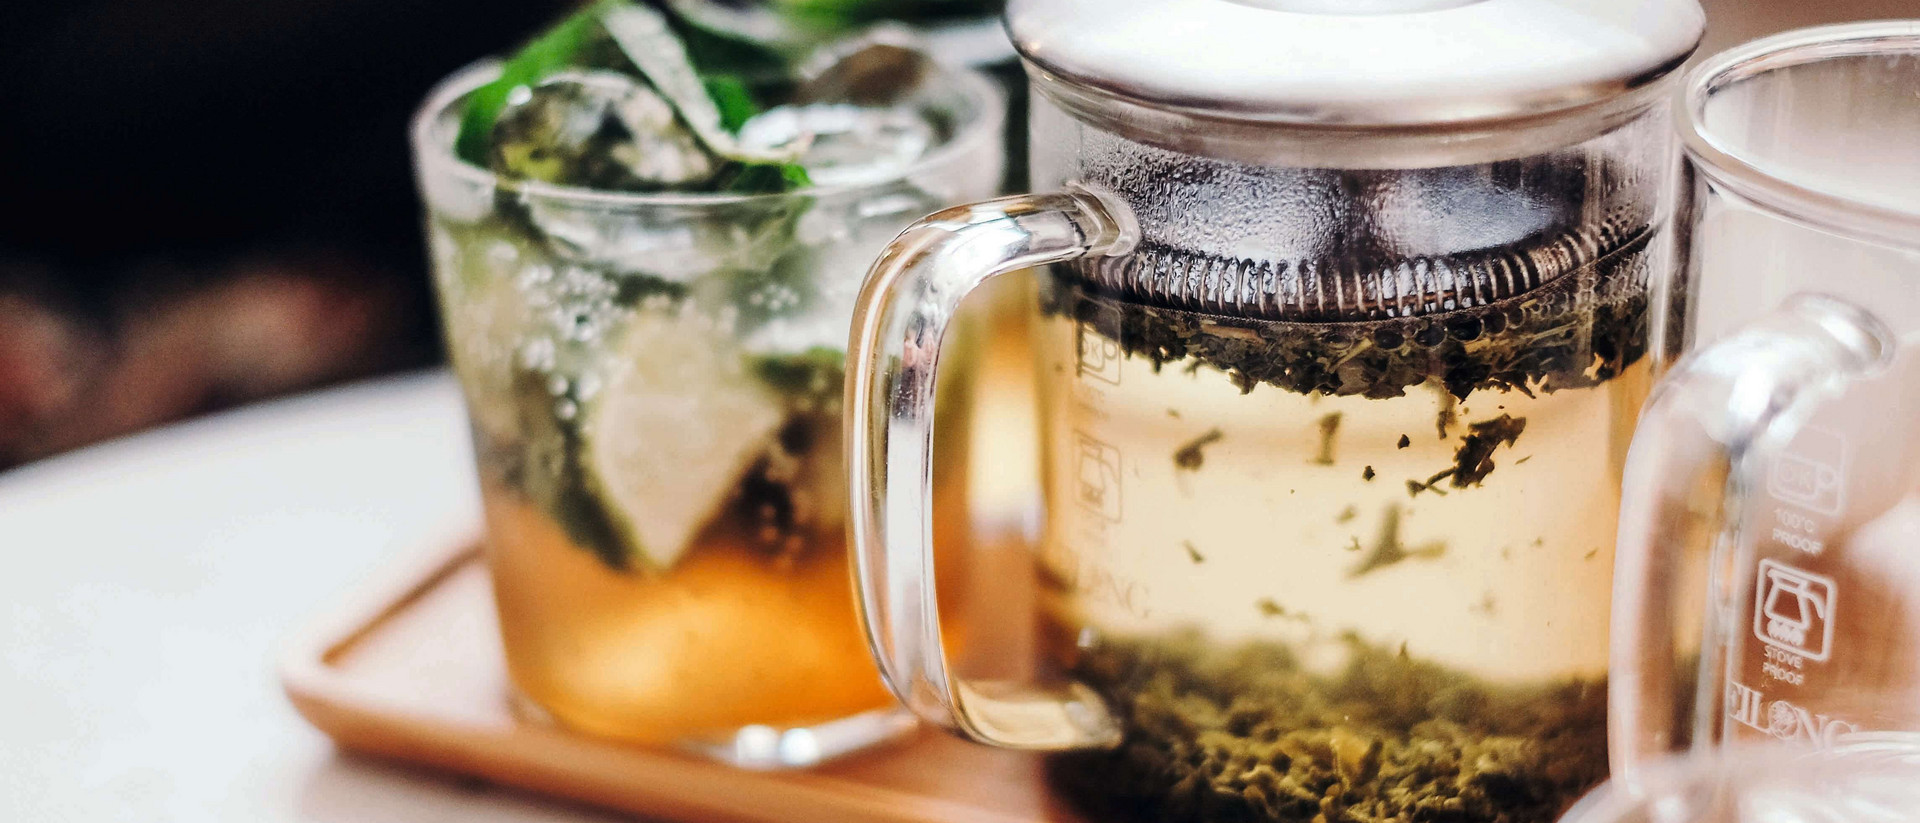 Eine gläserne Teekanne steht auf einem kleinen braunen Tablett, links und rechts von ihr stehen gläserne Teetassen. Die Kanne ist mit Wasser und frischem Tee gefüllt, das Glas links mit Tee und frischer Zitrone, das Glas rechts ist leer. 